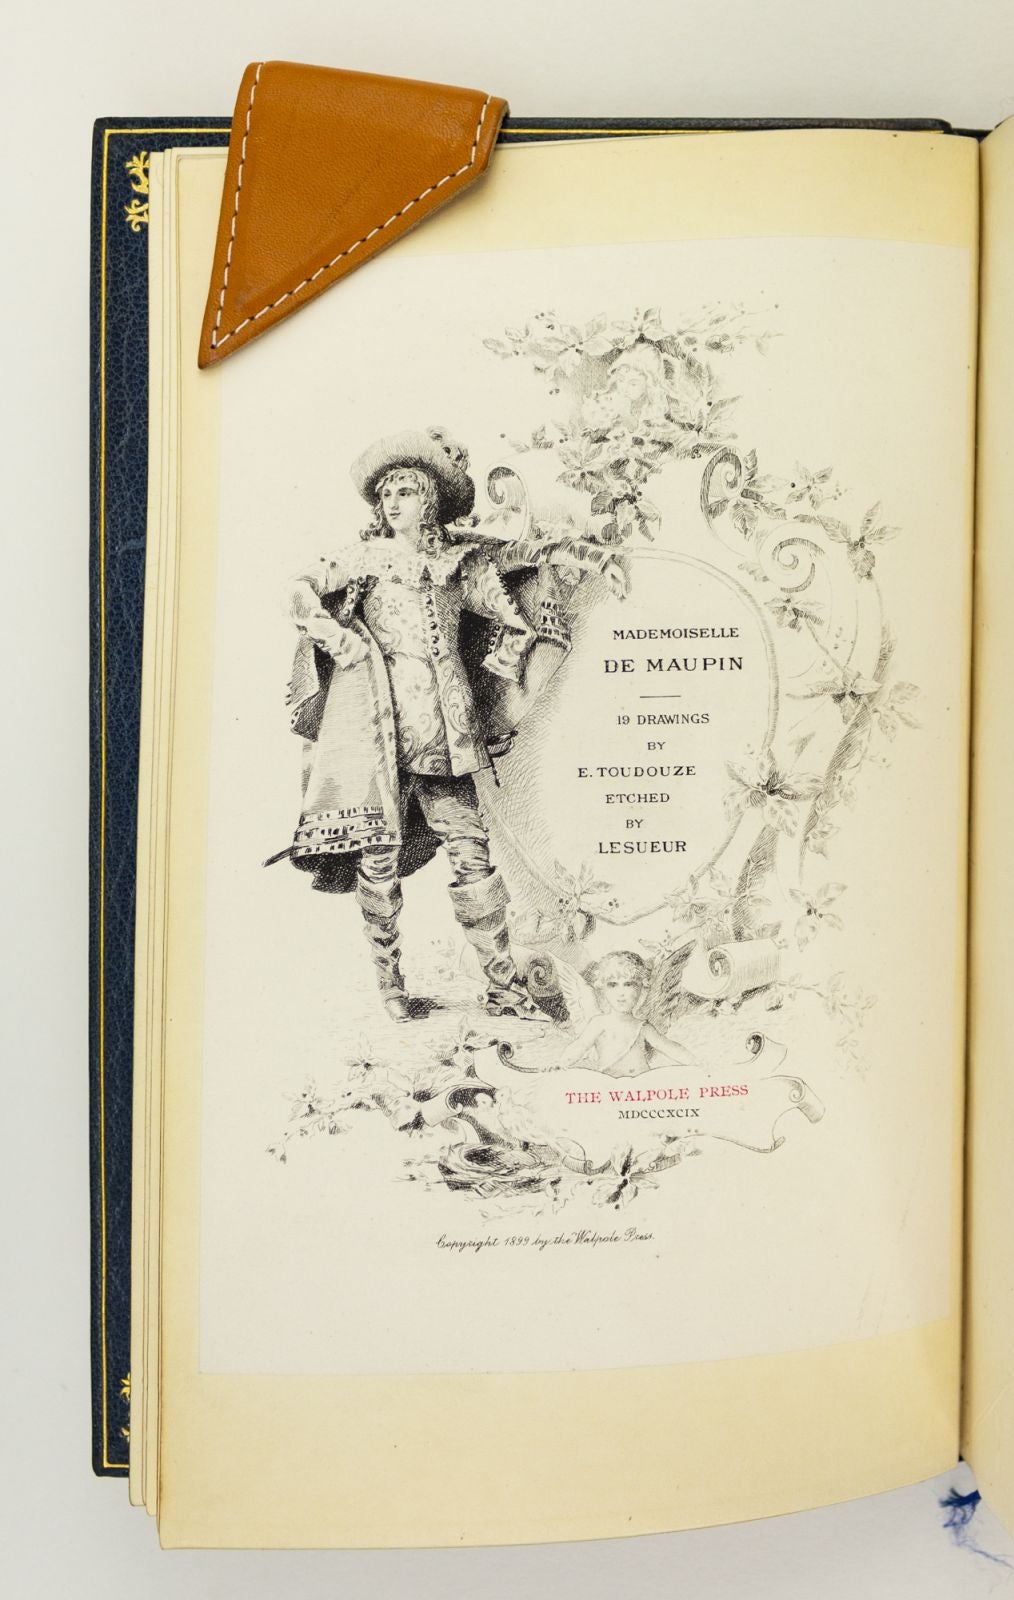 超特価品ゴーティエ『Mademoiselle de Maupin』(全2冊揃)限定500部 1883年パリ刊 銅版画18枚入 恋愛小説「モーパン嬢」19世紀フランス文学 画集